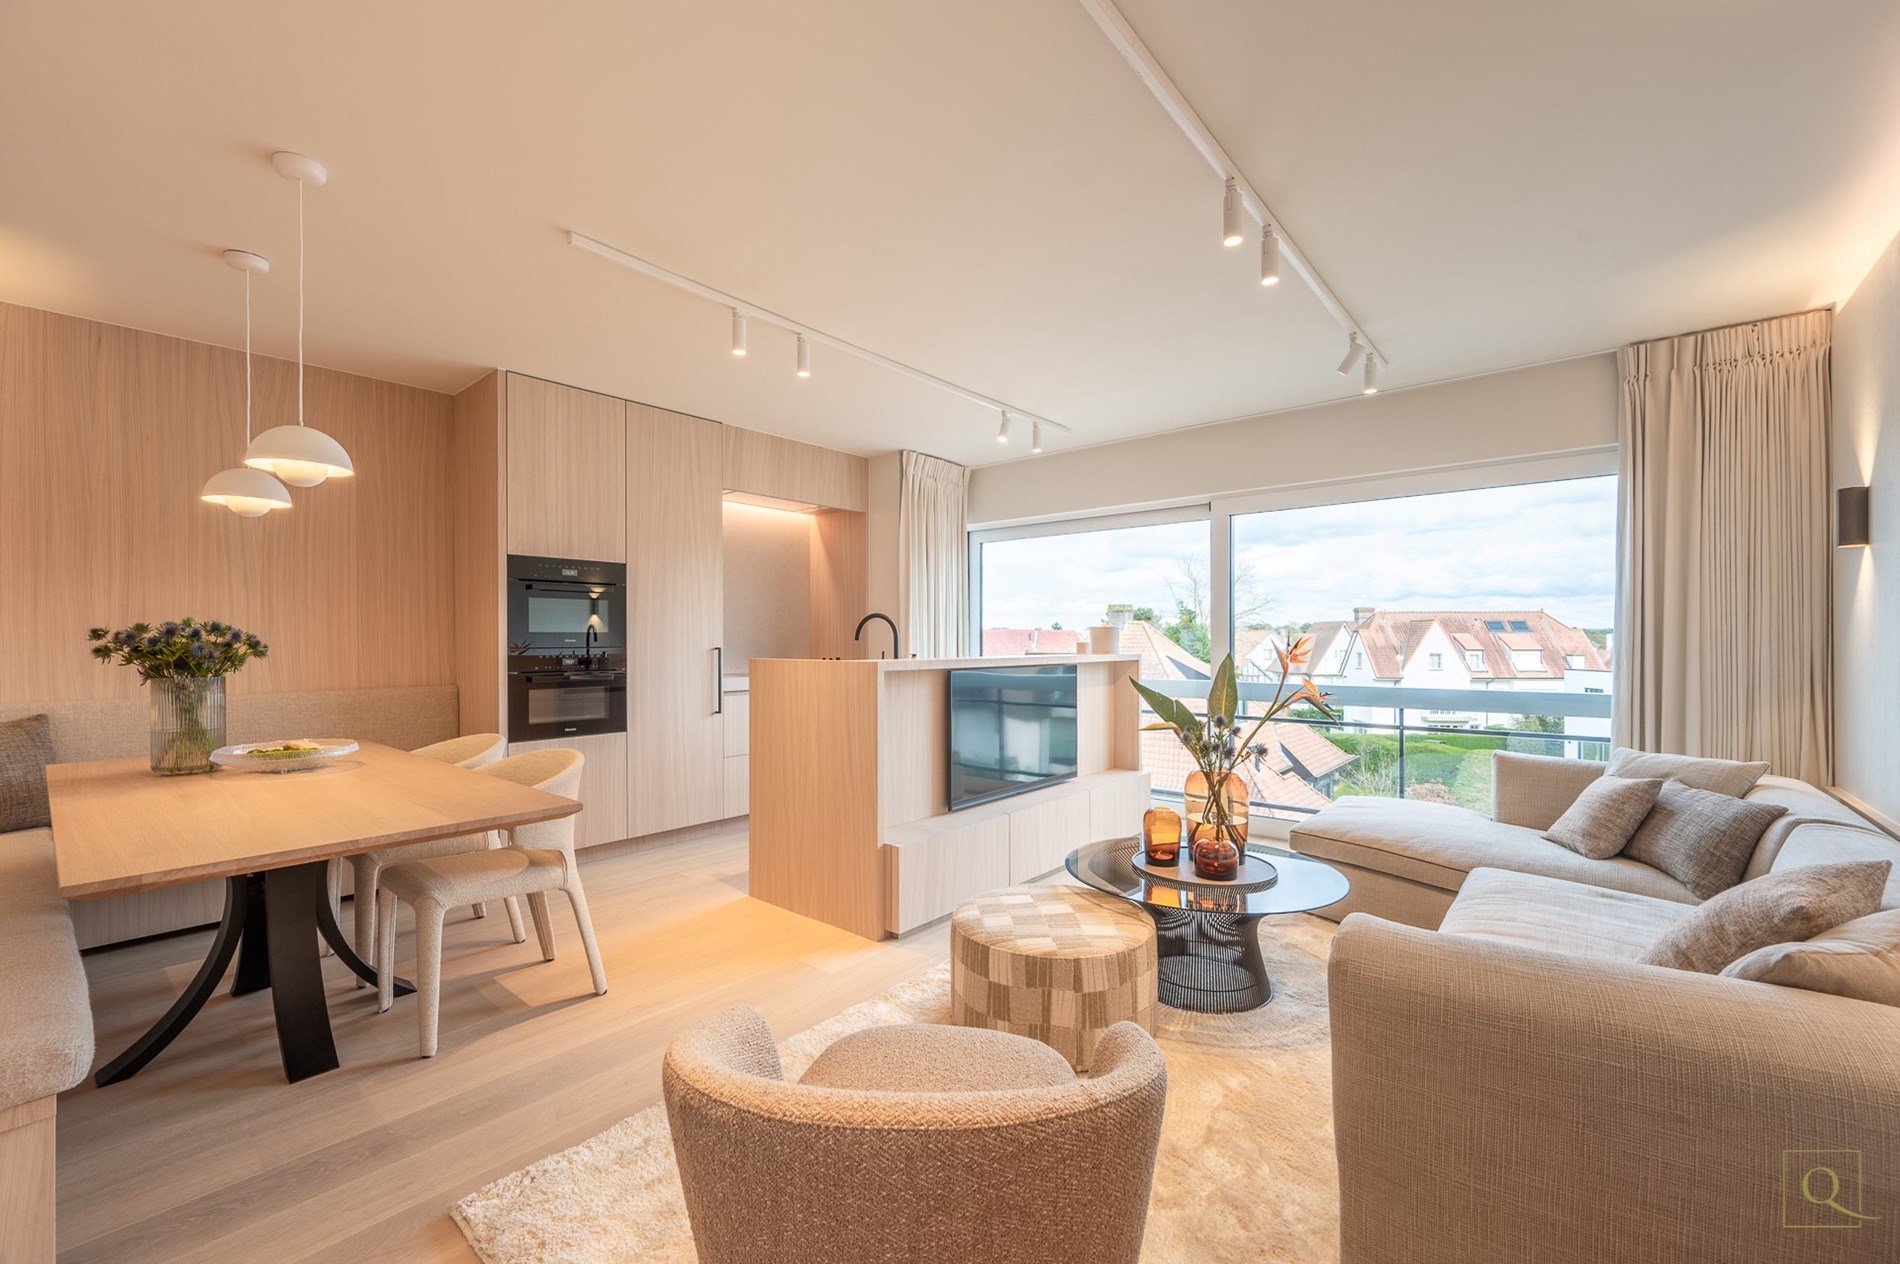 Prachtige renovatie met open zicht over de villa&#39;s en  3 slaapkamers centraal gelegen op de Piers de raveschootlaan te Knokke. 